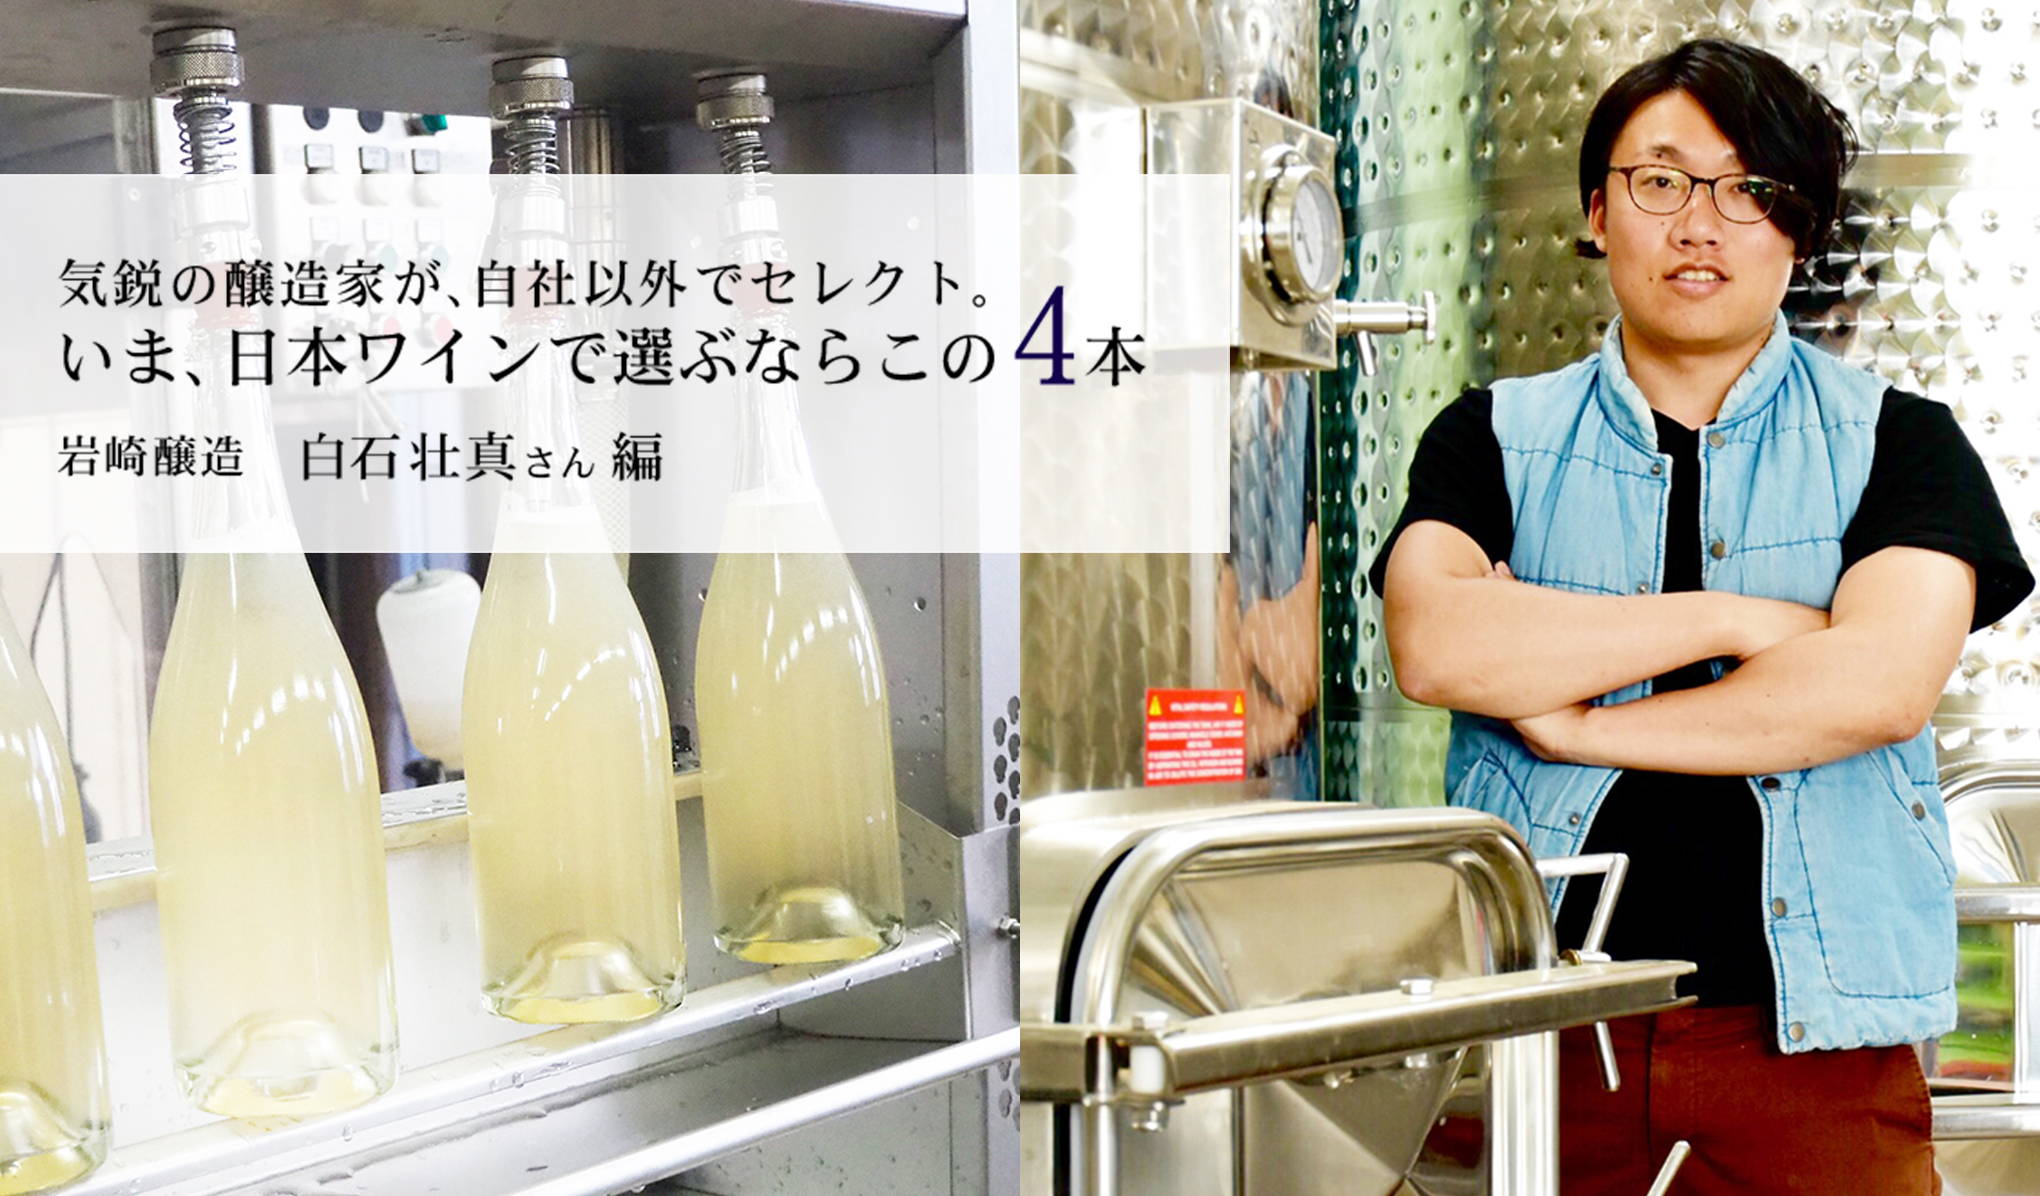 気鋭の若手醸造家、岩崎醸造の白石壮真(しらいしそうま)さんが、自社以外でセレクト。いま、日本ワインで選ぶならこの4本